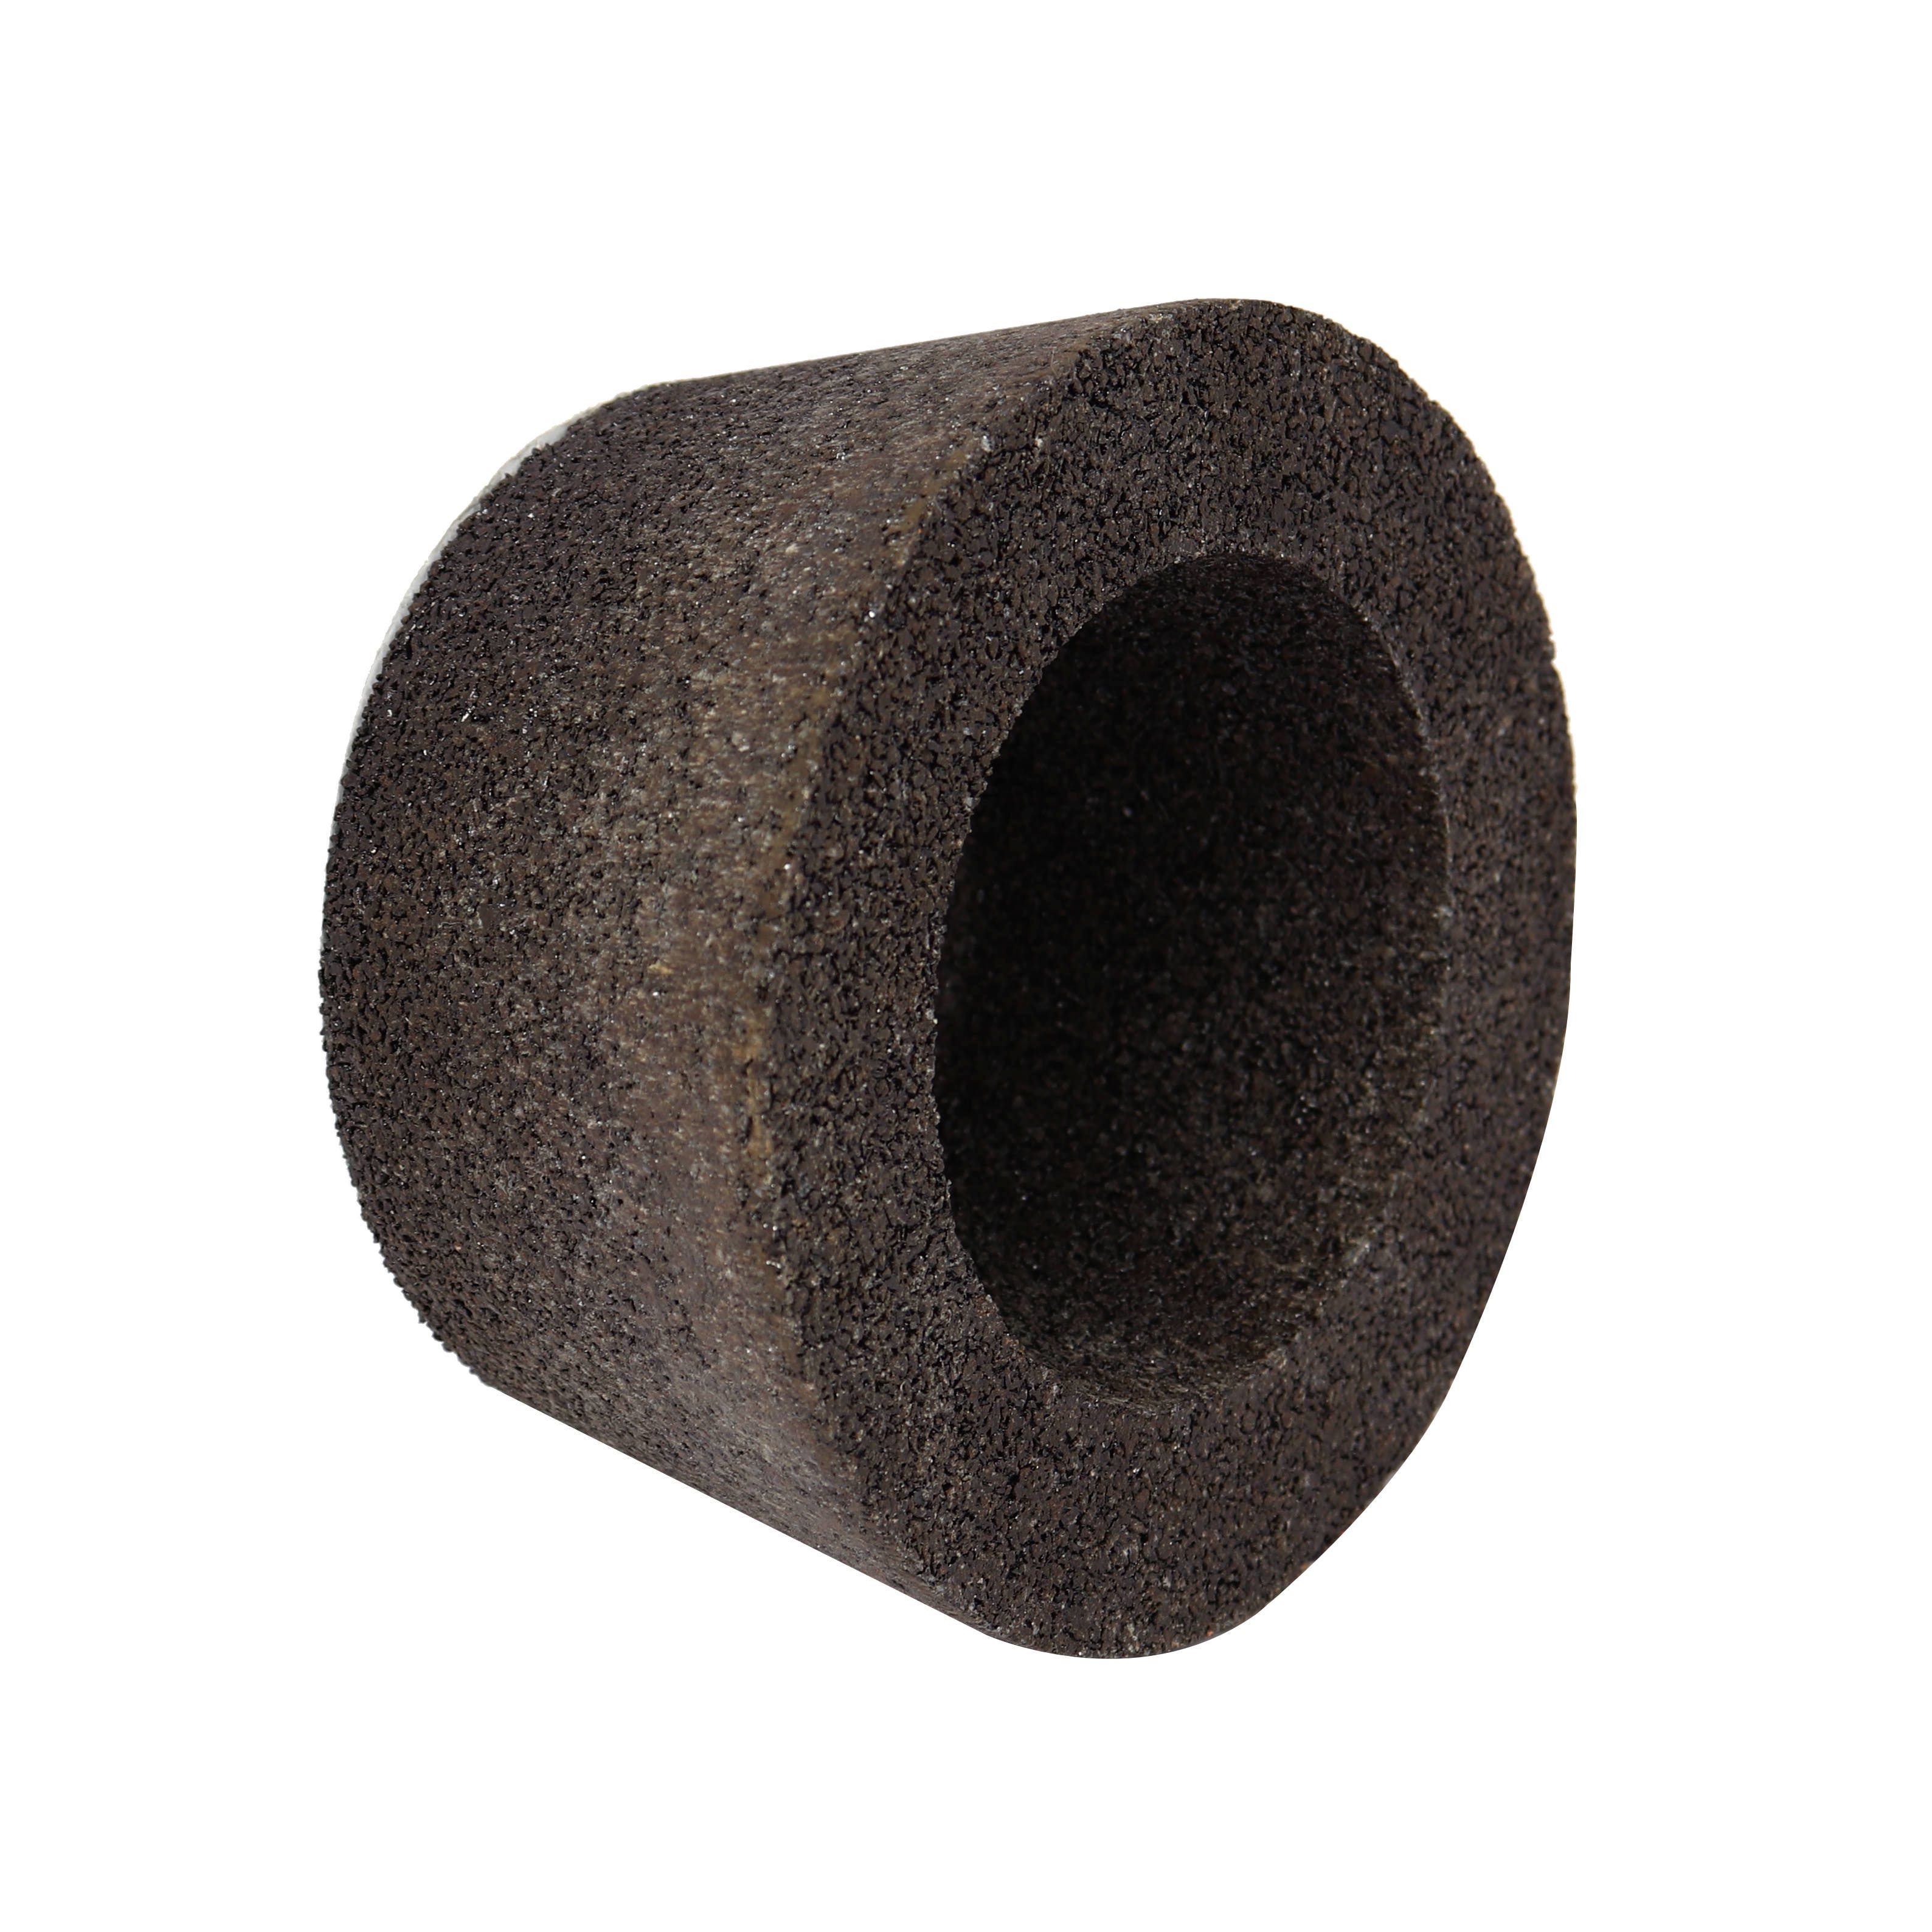 Piatra oala pentru slefuit pardoseli din beton si epoxidice, Carbochim 11BT1, 110 x 55 x 22.2 mm